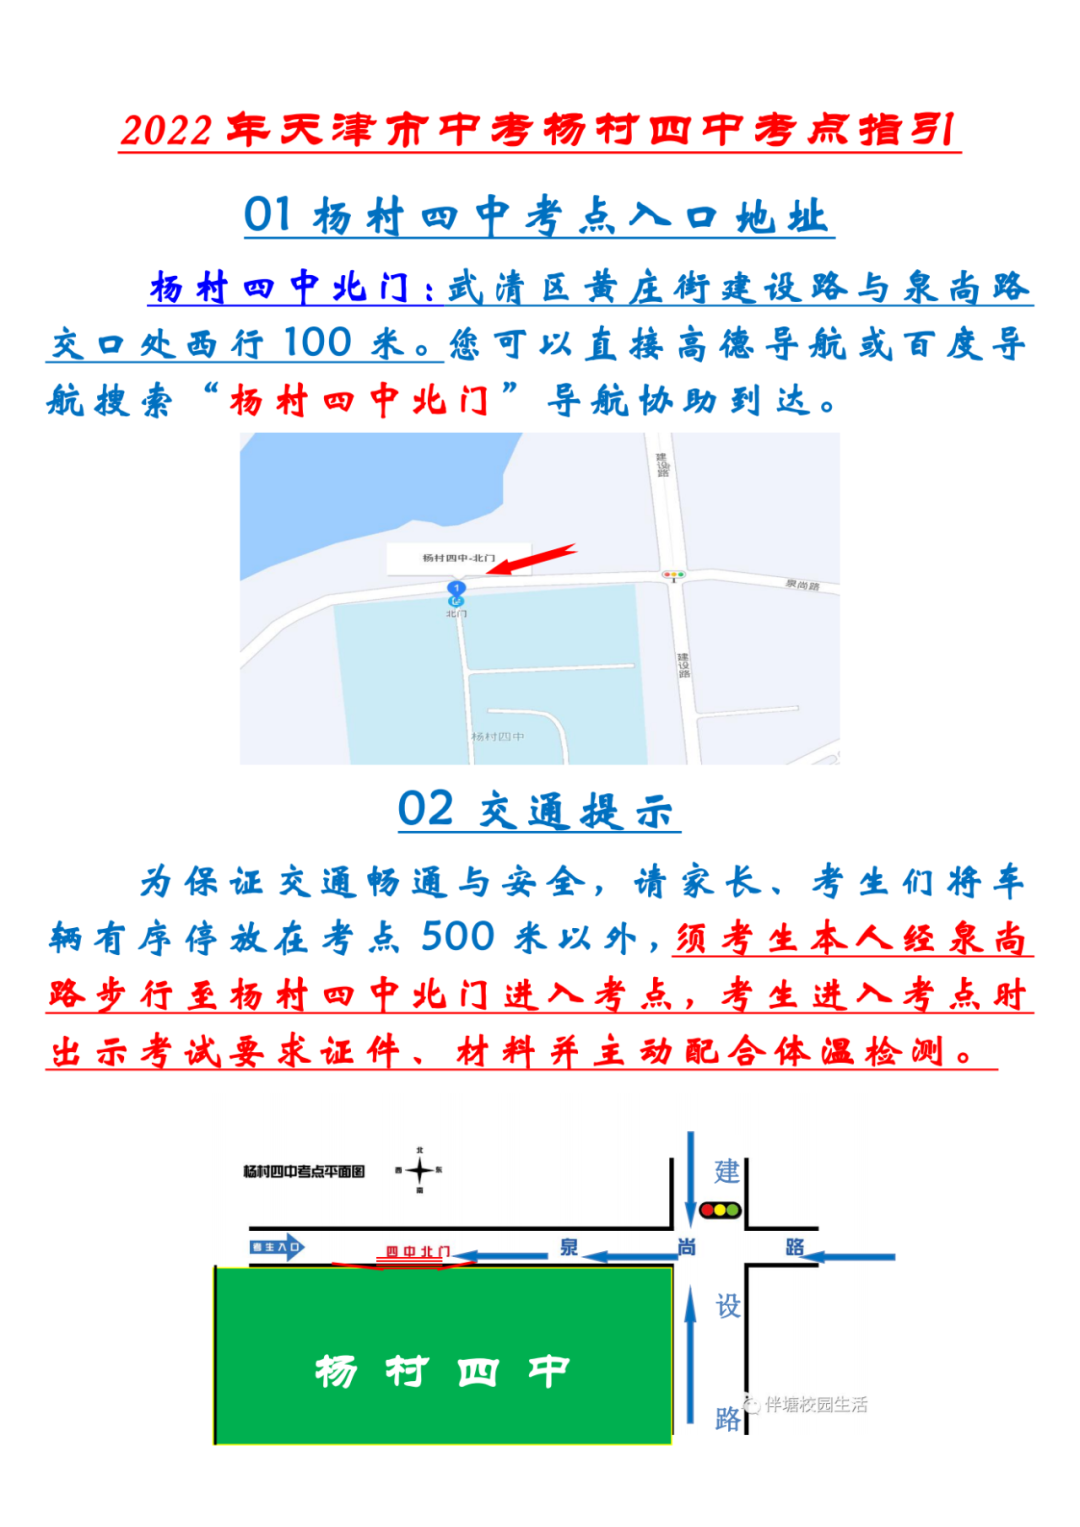 2022年天津武清区中考考点考场示意图(图47)